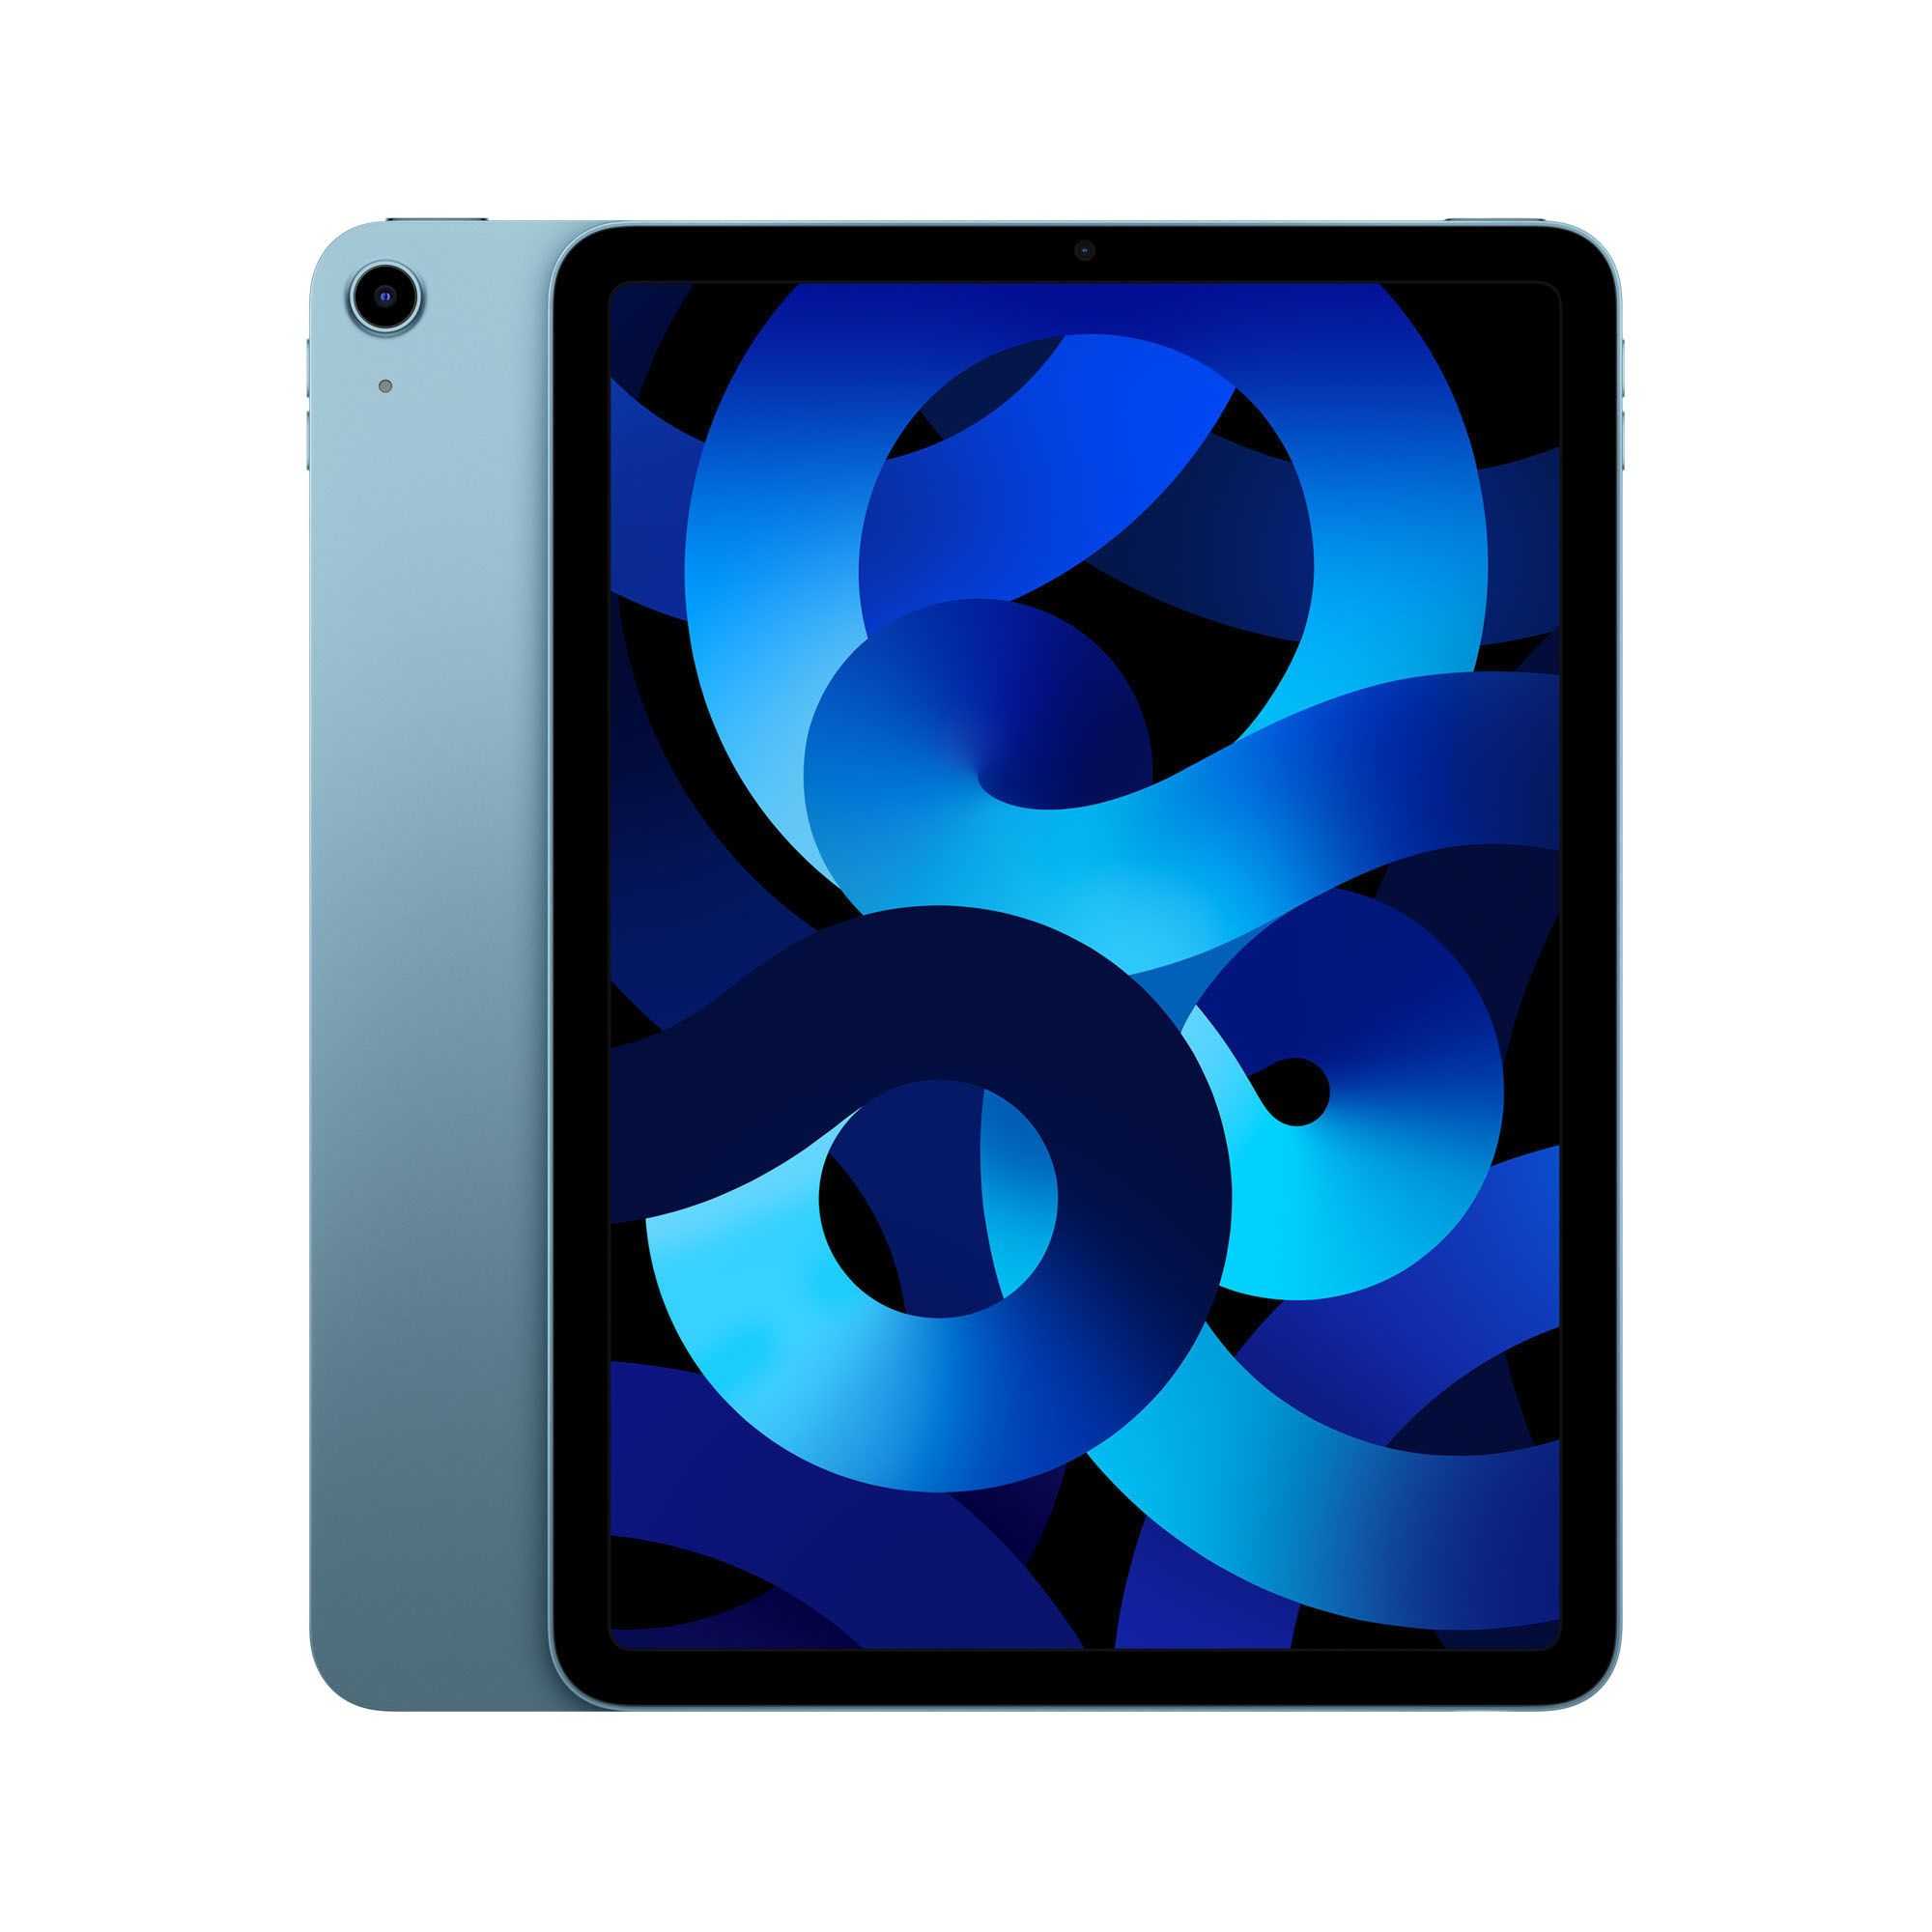 Apple iPad Air 10.9", 64GB, Wi-Fi, Blue, 9.7"L x 7.0"W x 0.2"H